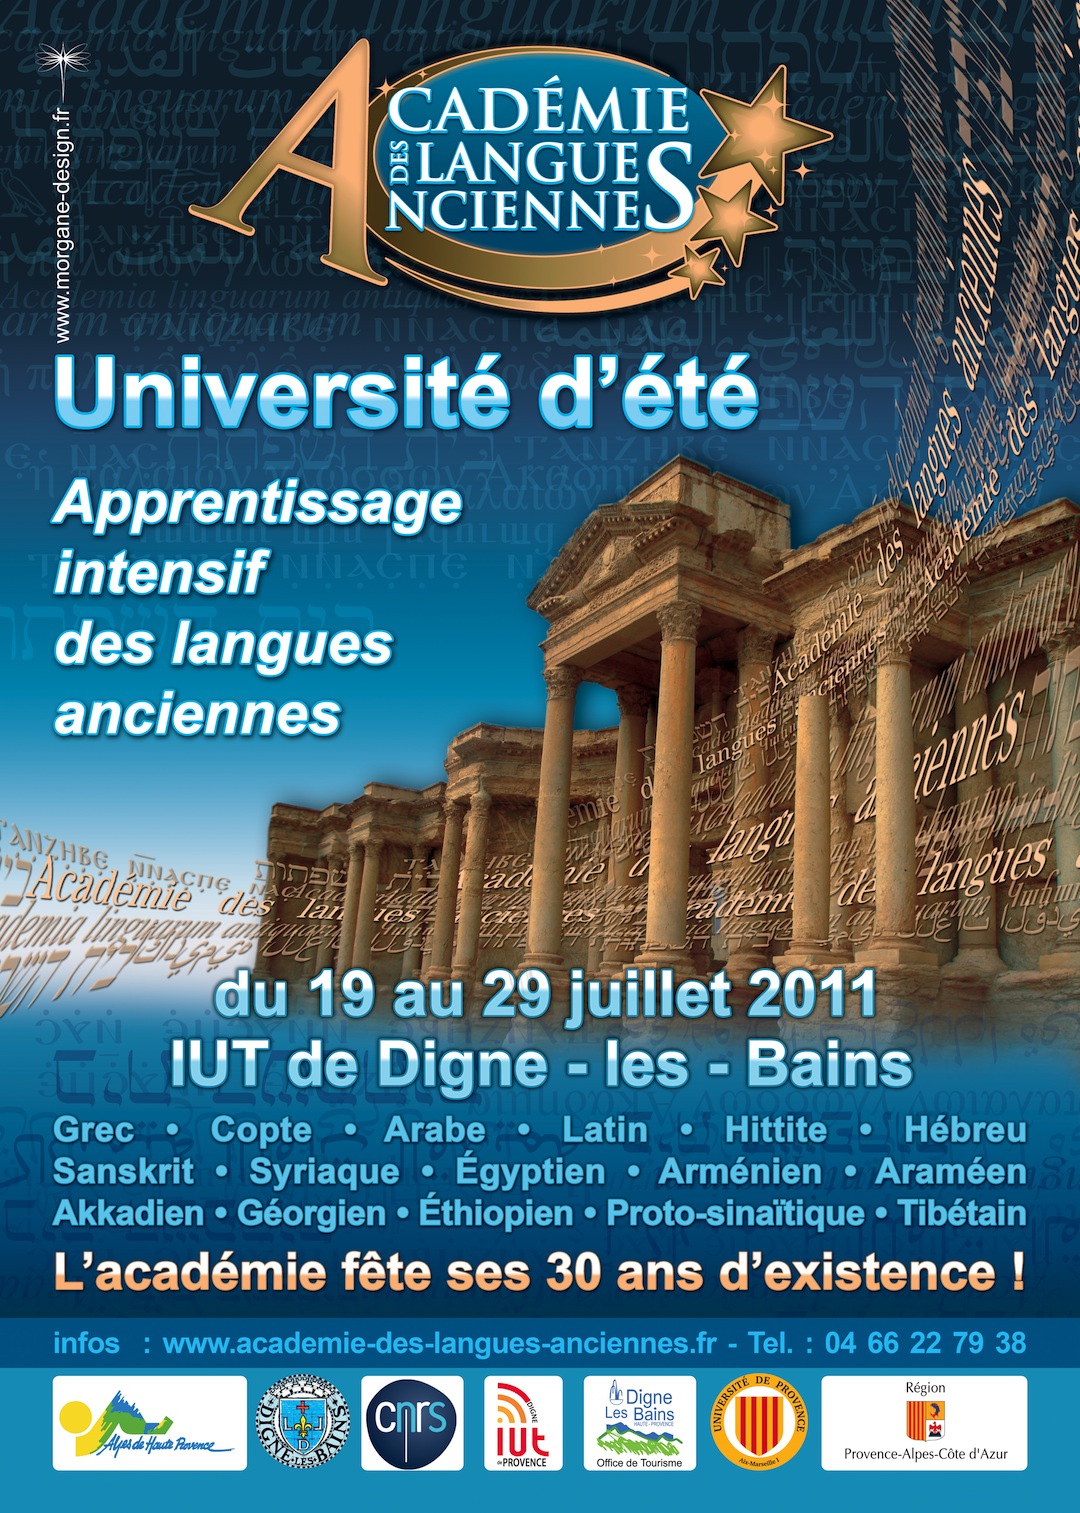 L’IUT de Digne accueillait la 11ème Académie de langues anciennes cet été.